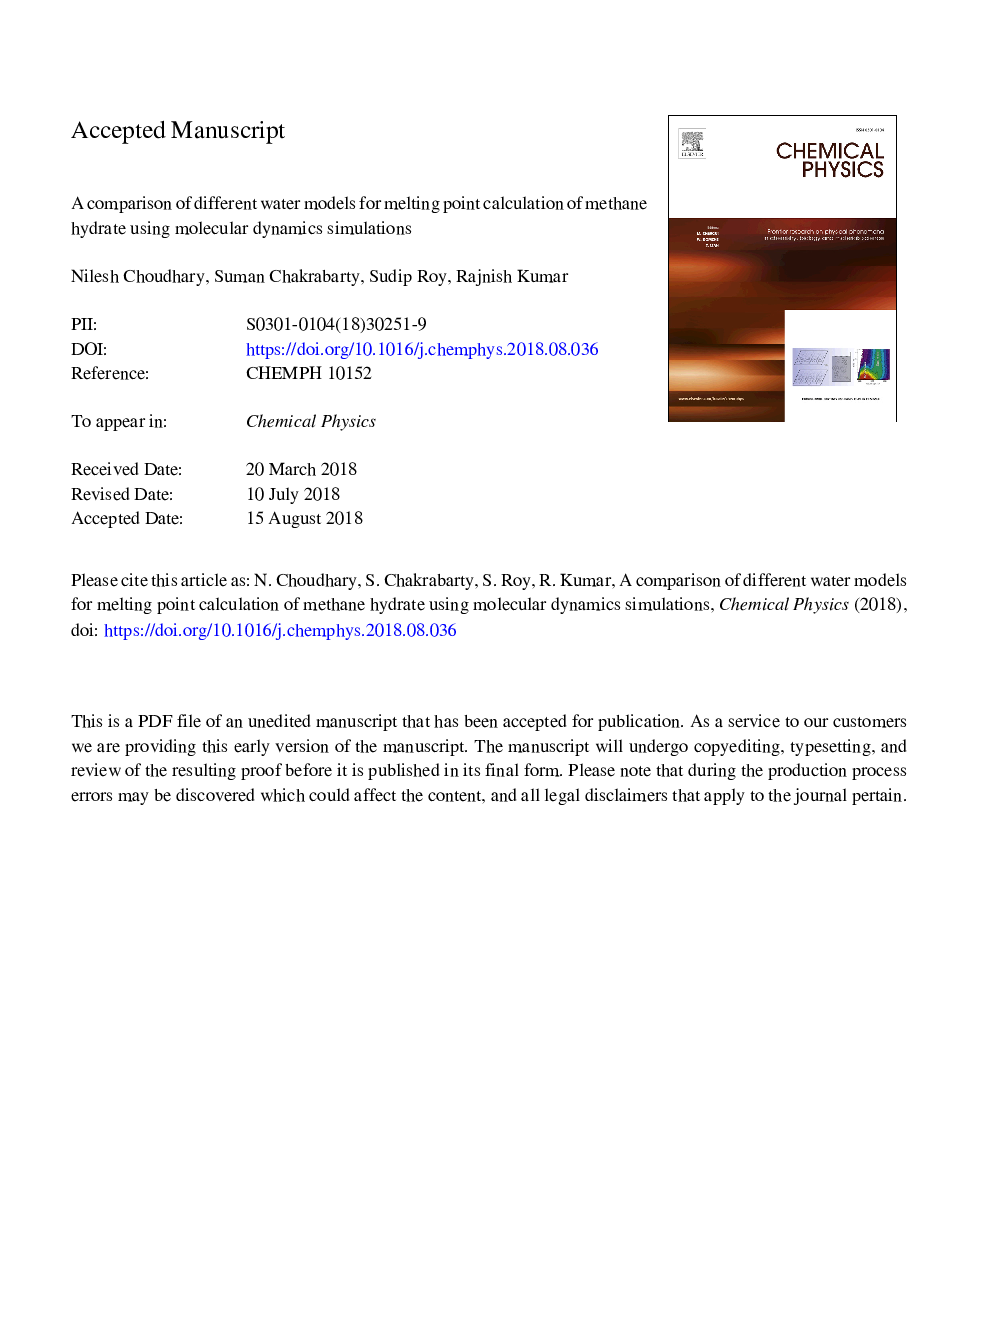 مقایسه مدل های مختلف آب برای محاسبه نقطه ذوب هیدرات متان با استفاده از شبیه سازی های پویایی مولکولی